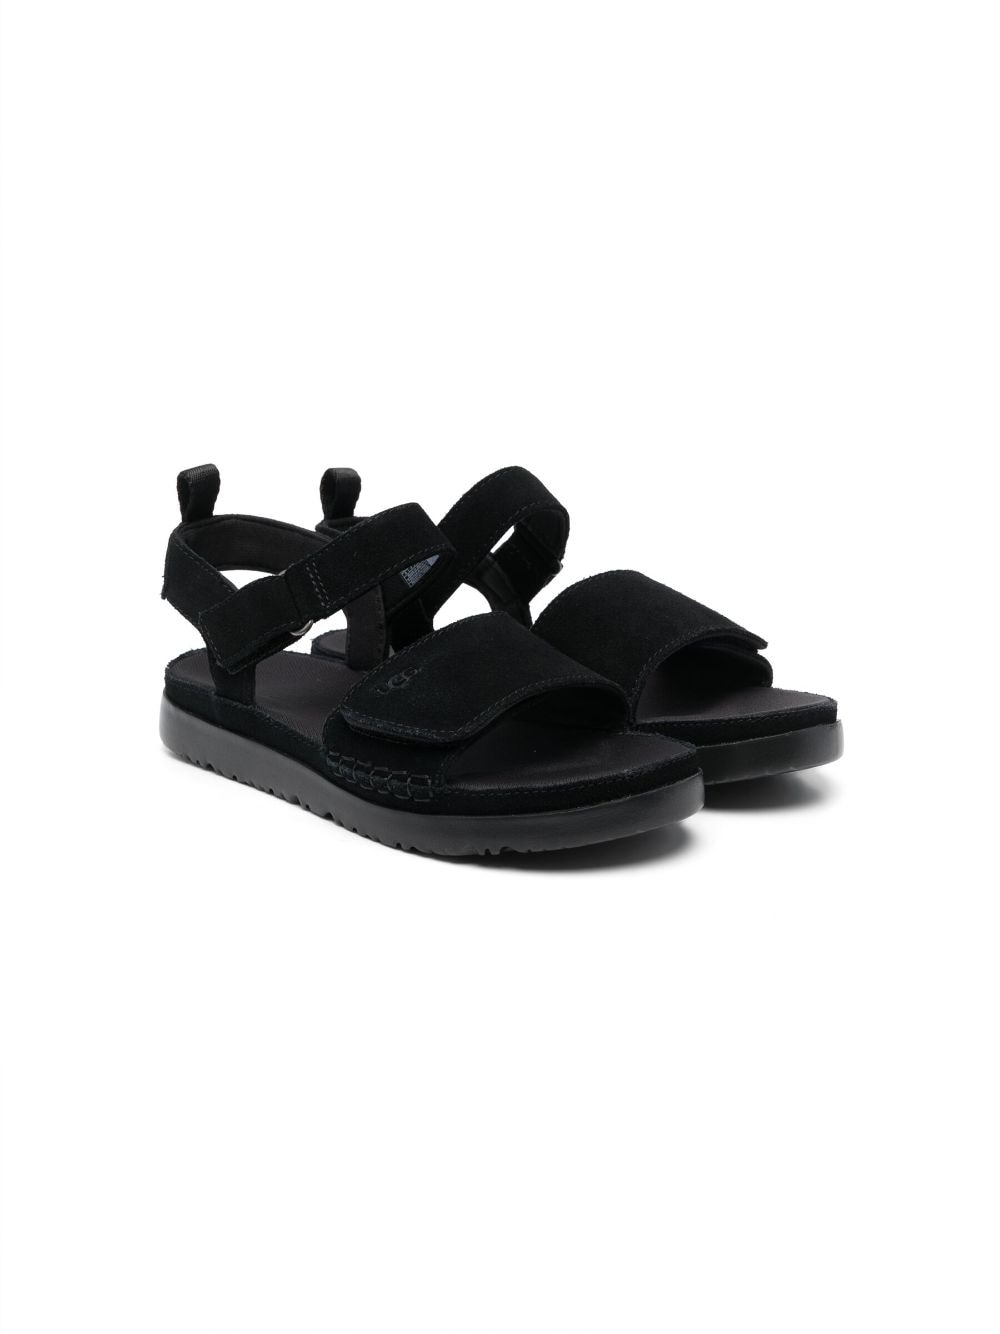 UGG Kids calf suede slingback sandals - Black von UGG Kids